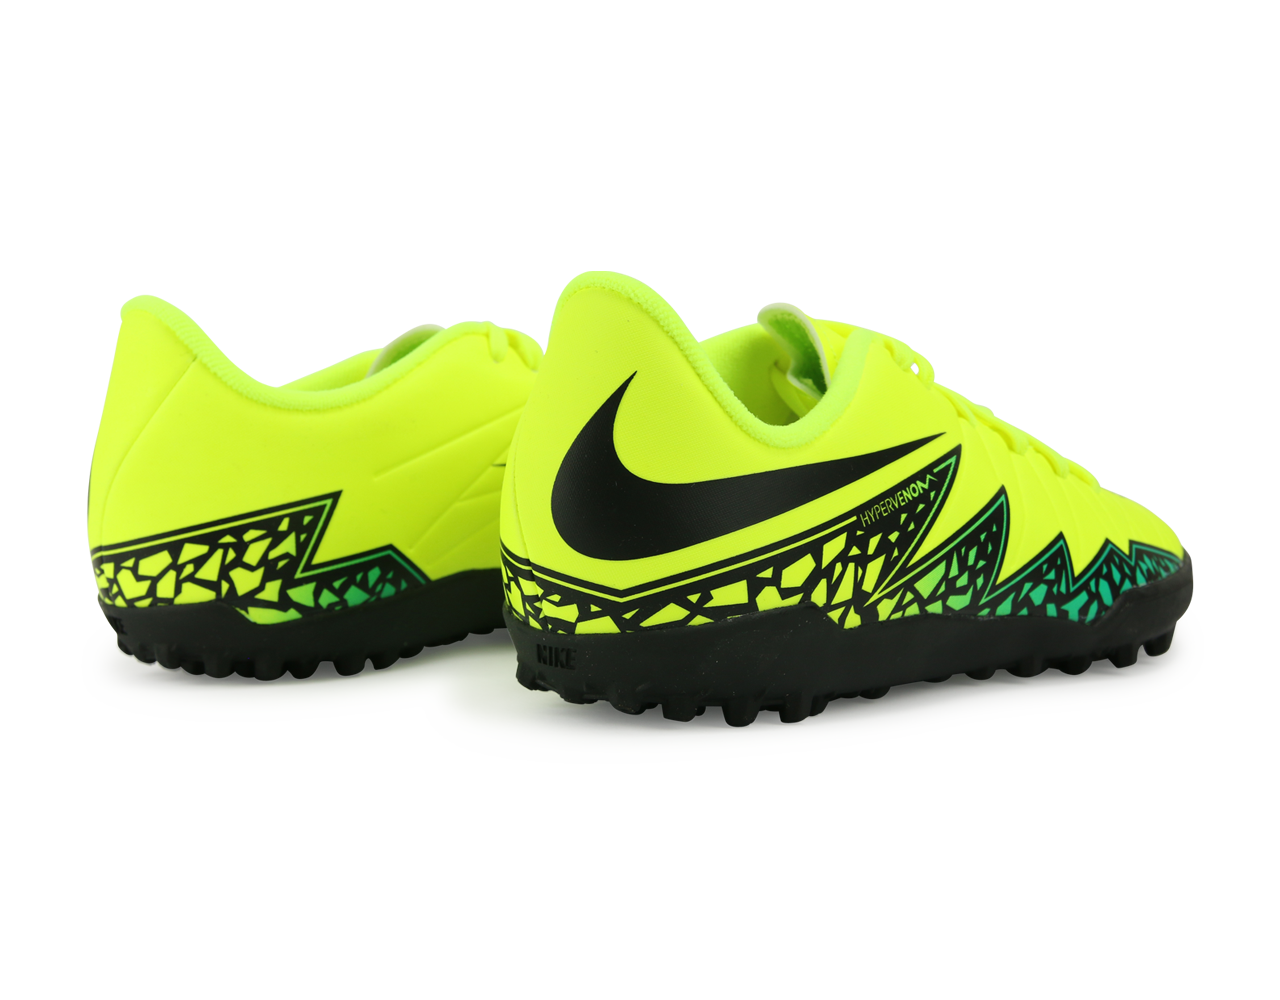 Nike Kids Hypervenom Phelon II Turf Soccer Shoes Volt/Black/Hyper Turquoise